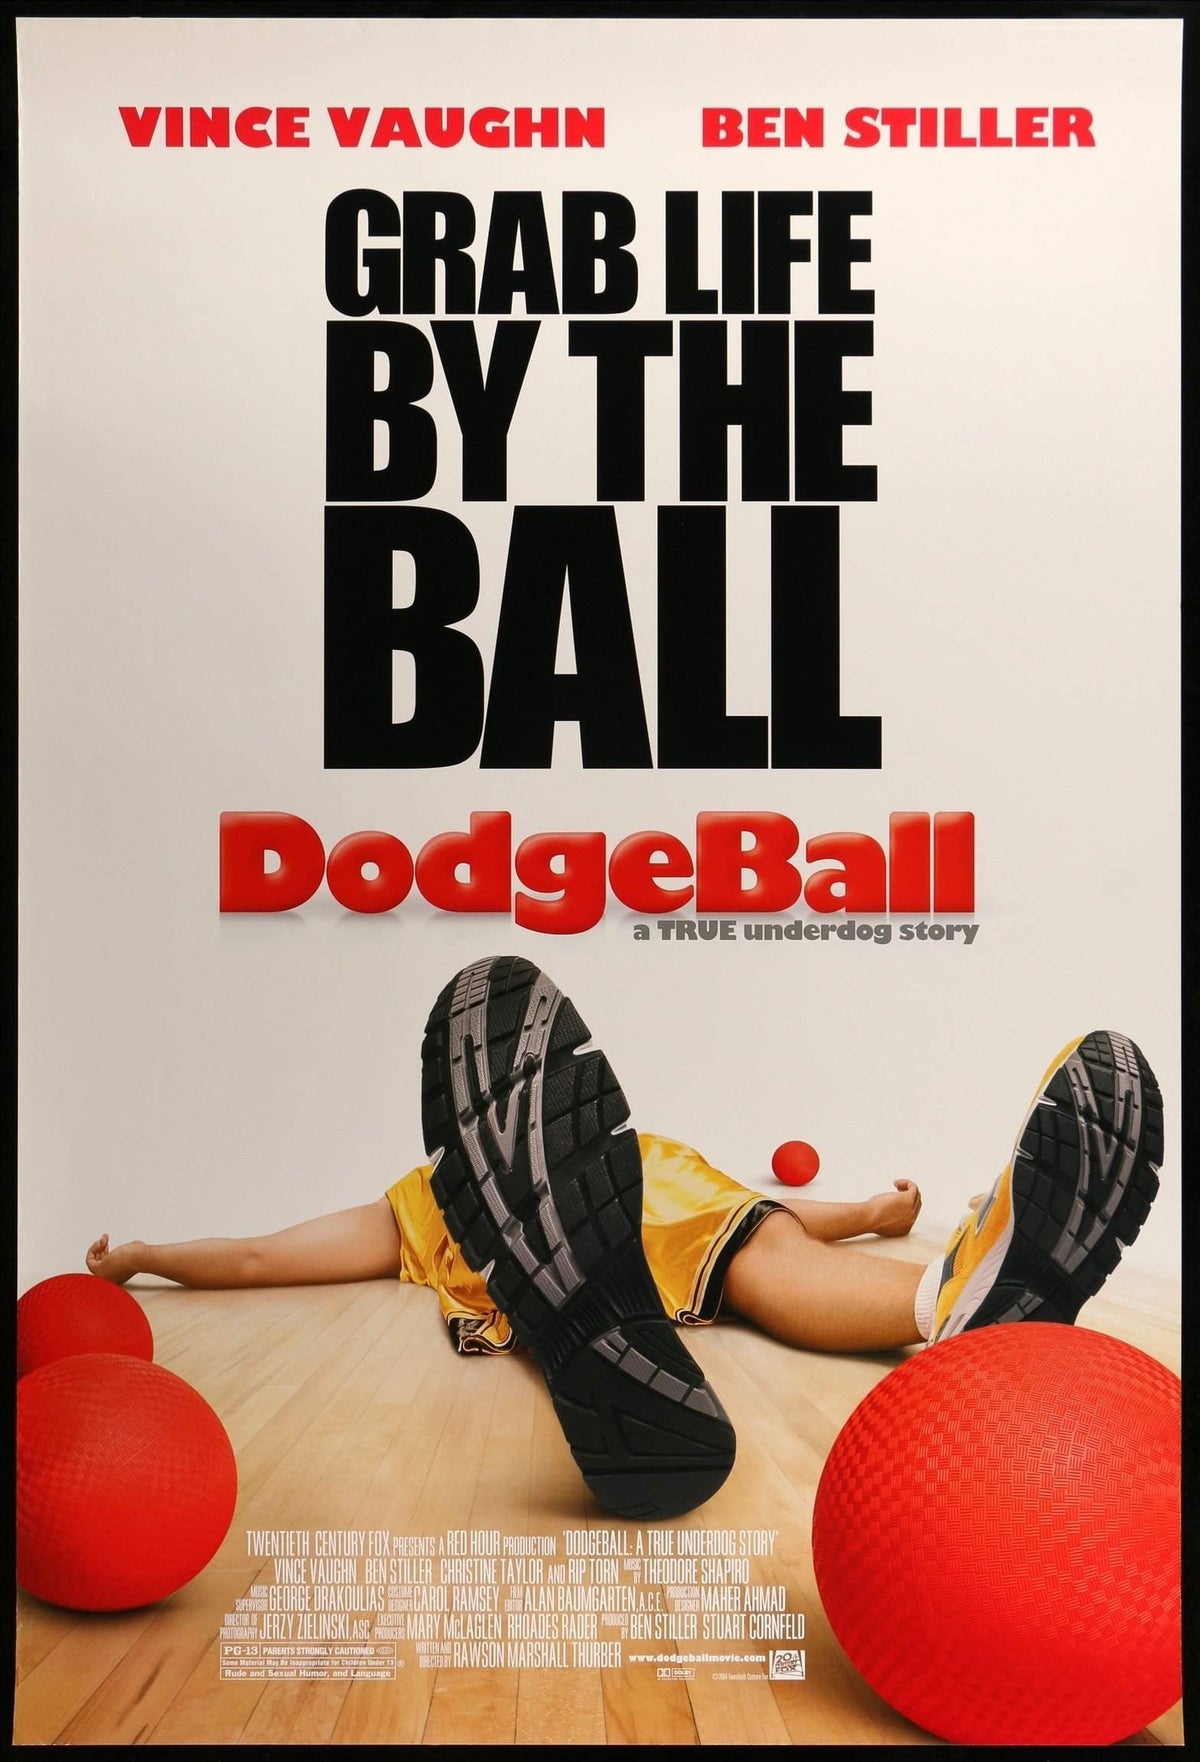 Dodgeball: A True Underdog Story (2004) original movie poster for sale at Original Film Art